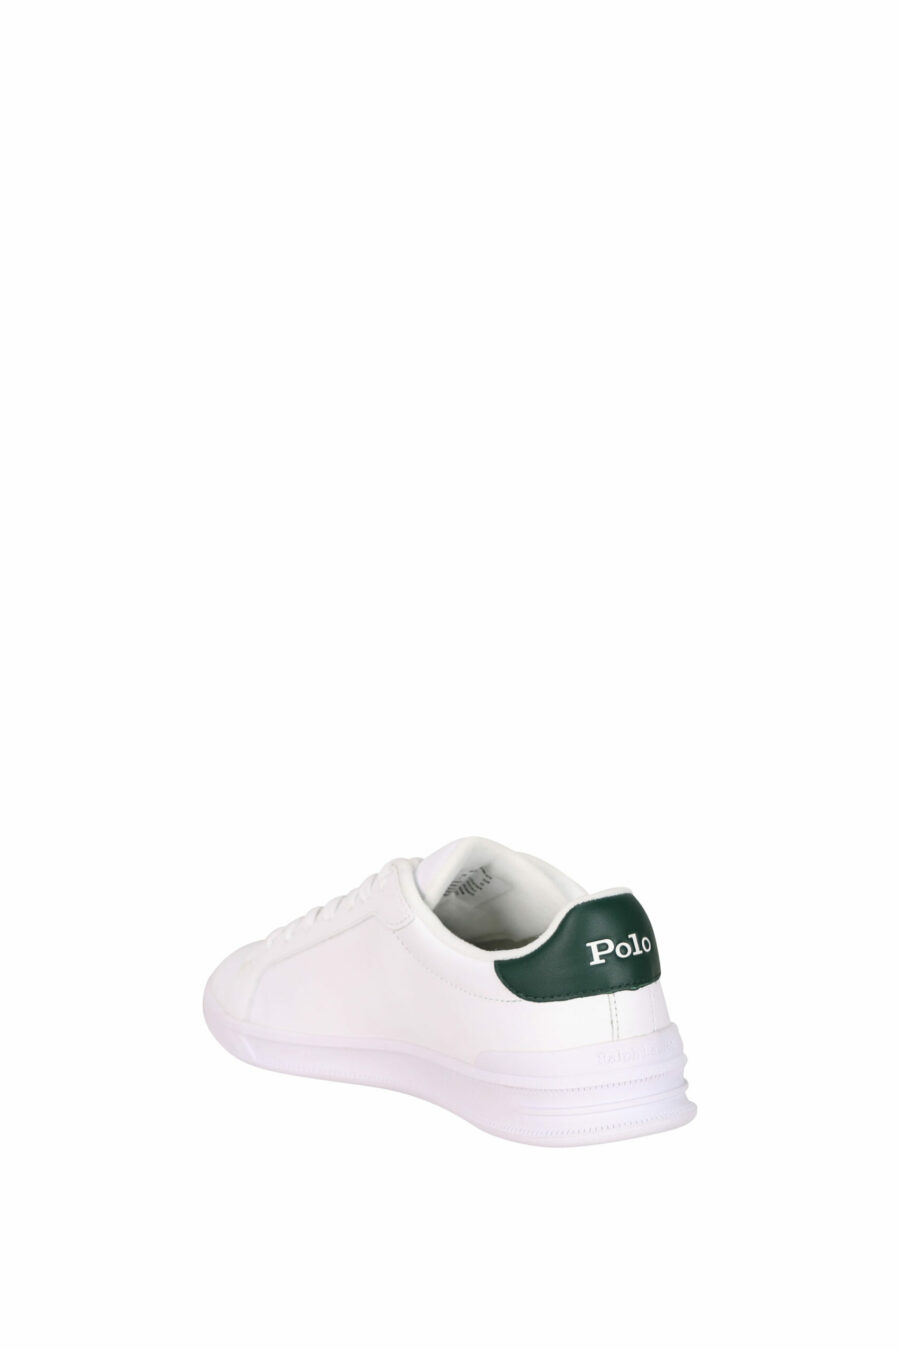 Zapatillas blancas con detalle verde y minilogo "polo" verde - 3616419508906 3 scaled